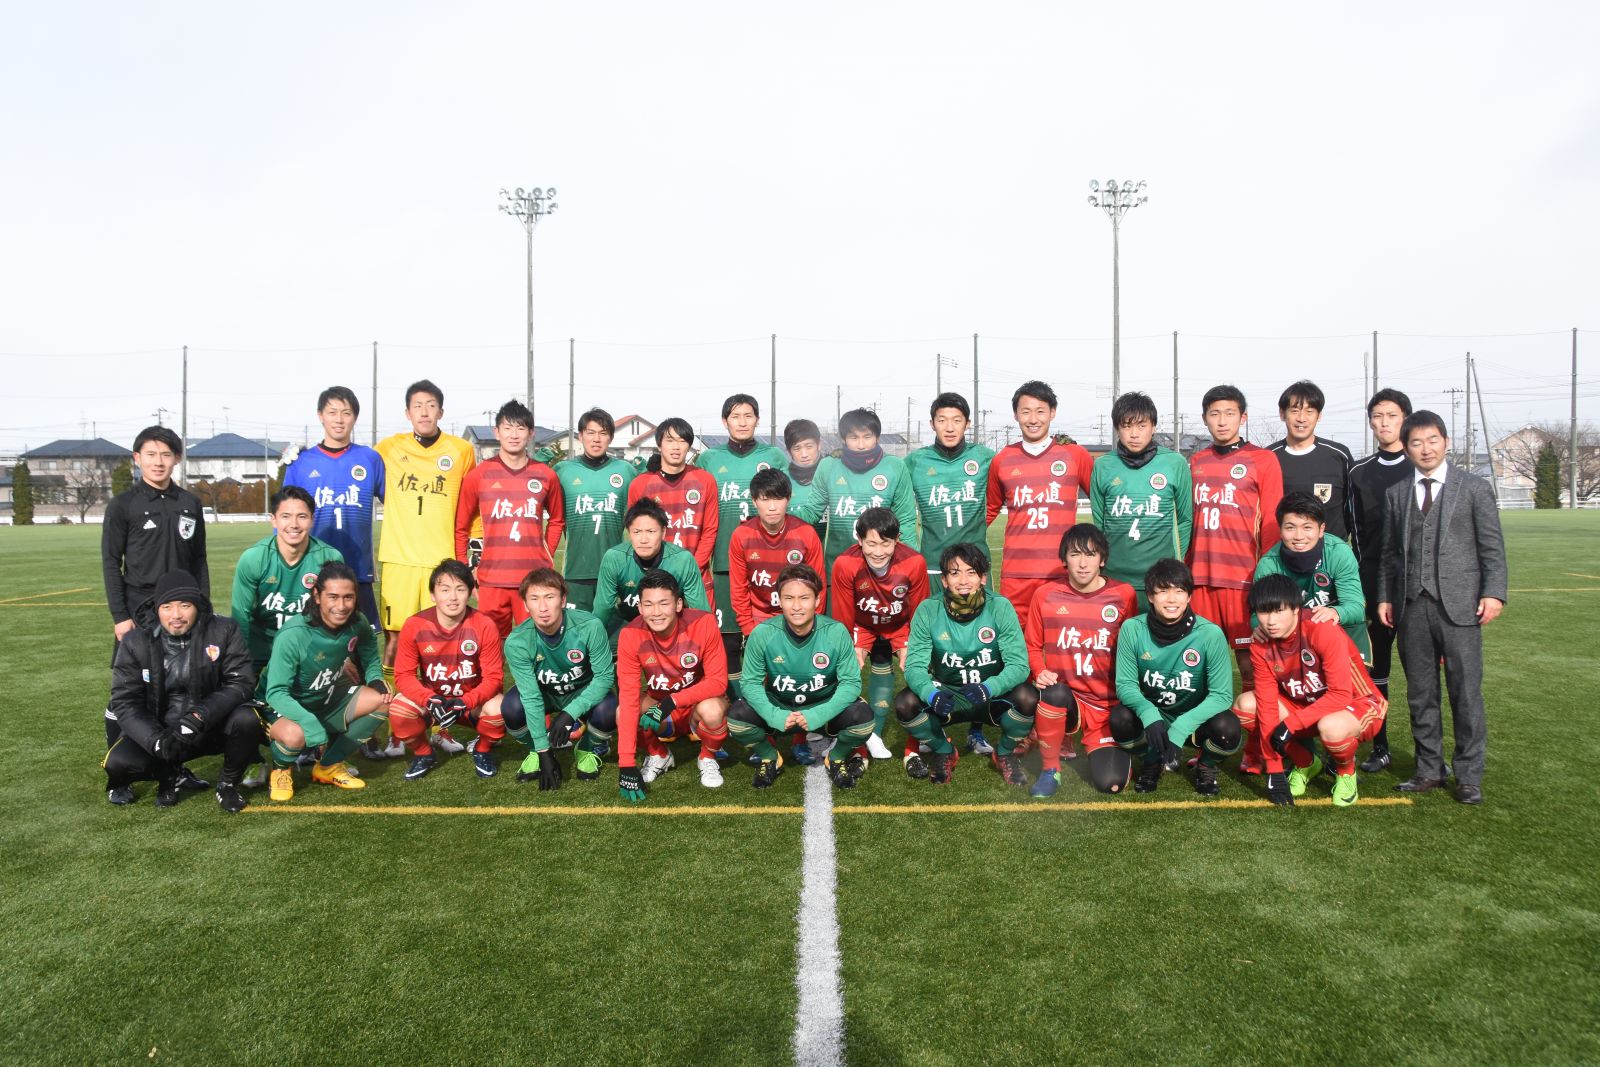 開学50周年記念イベント 男子サッカー部 Vs 男子サッカー部obプロ選手 戦が開催されました 仙台大学